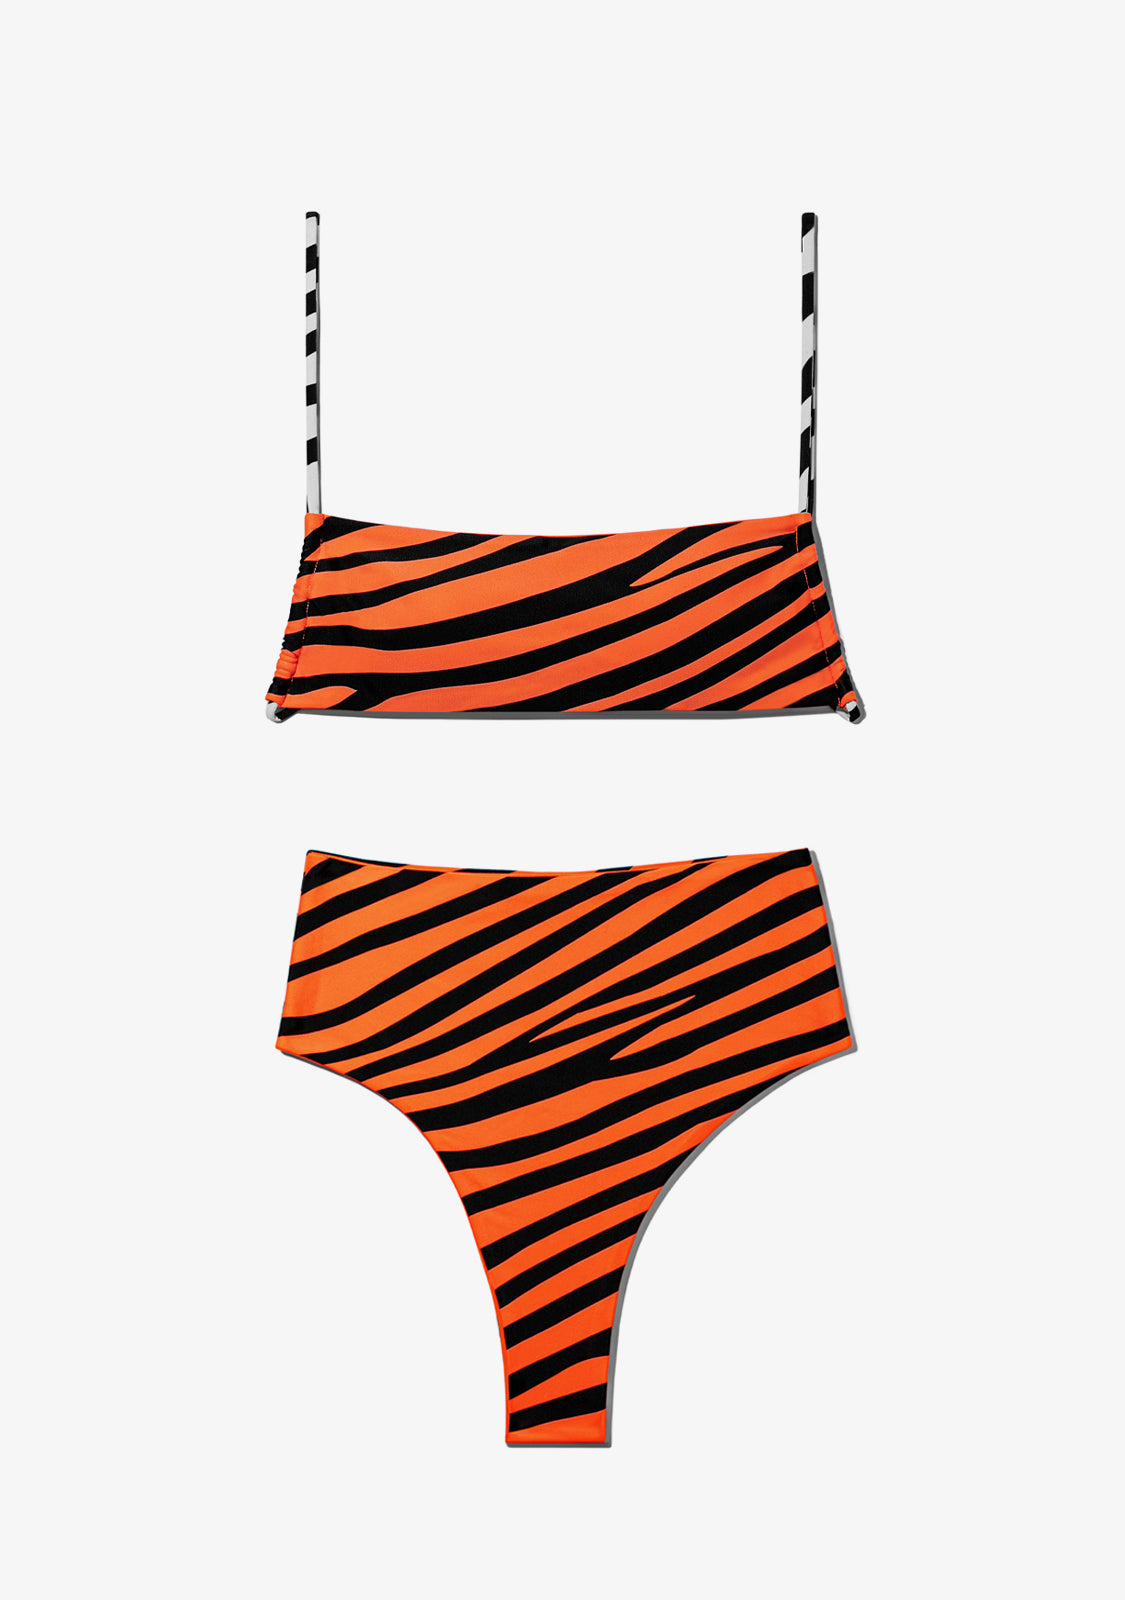 Fiji Top + Maui Bottom Bikini Zebra Orange